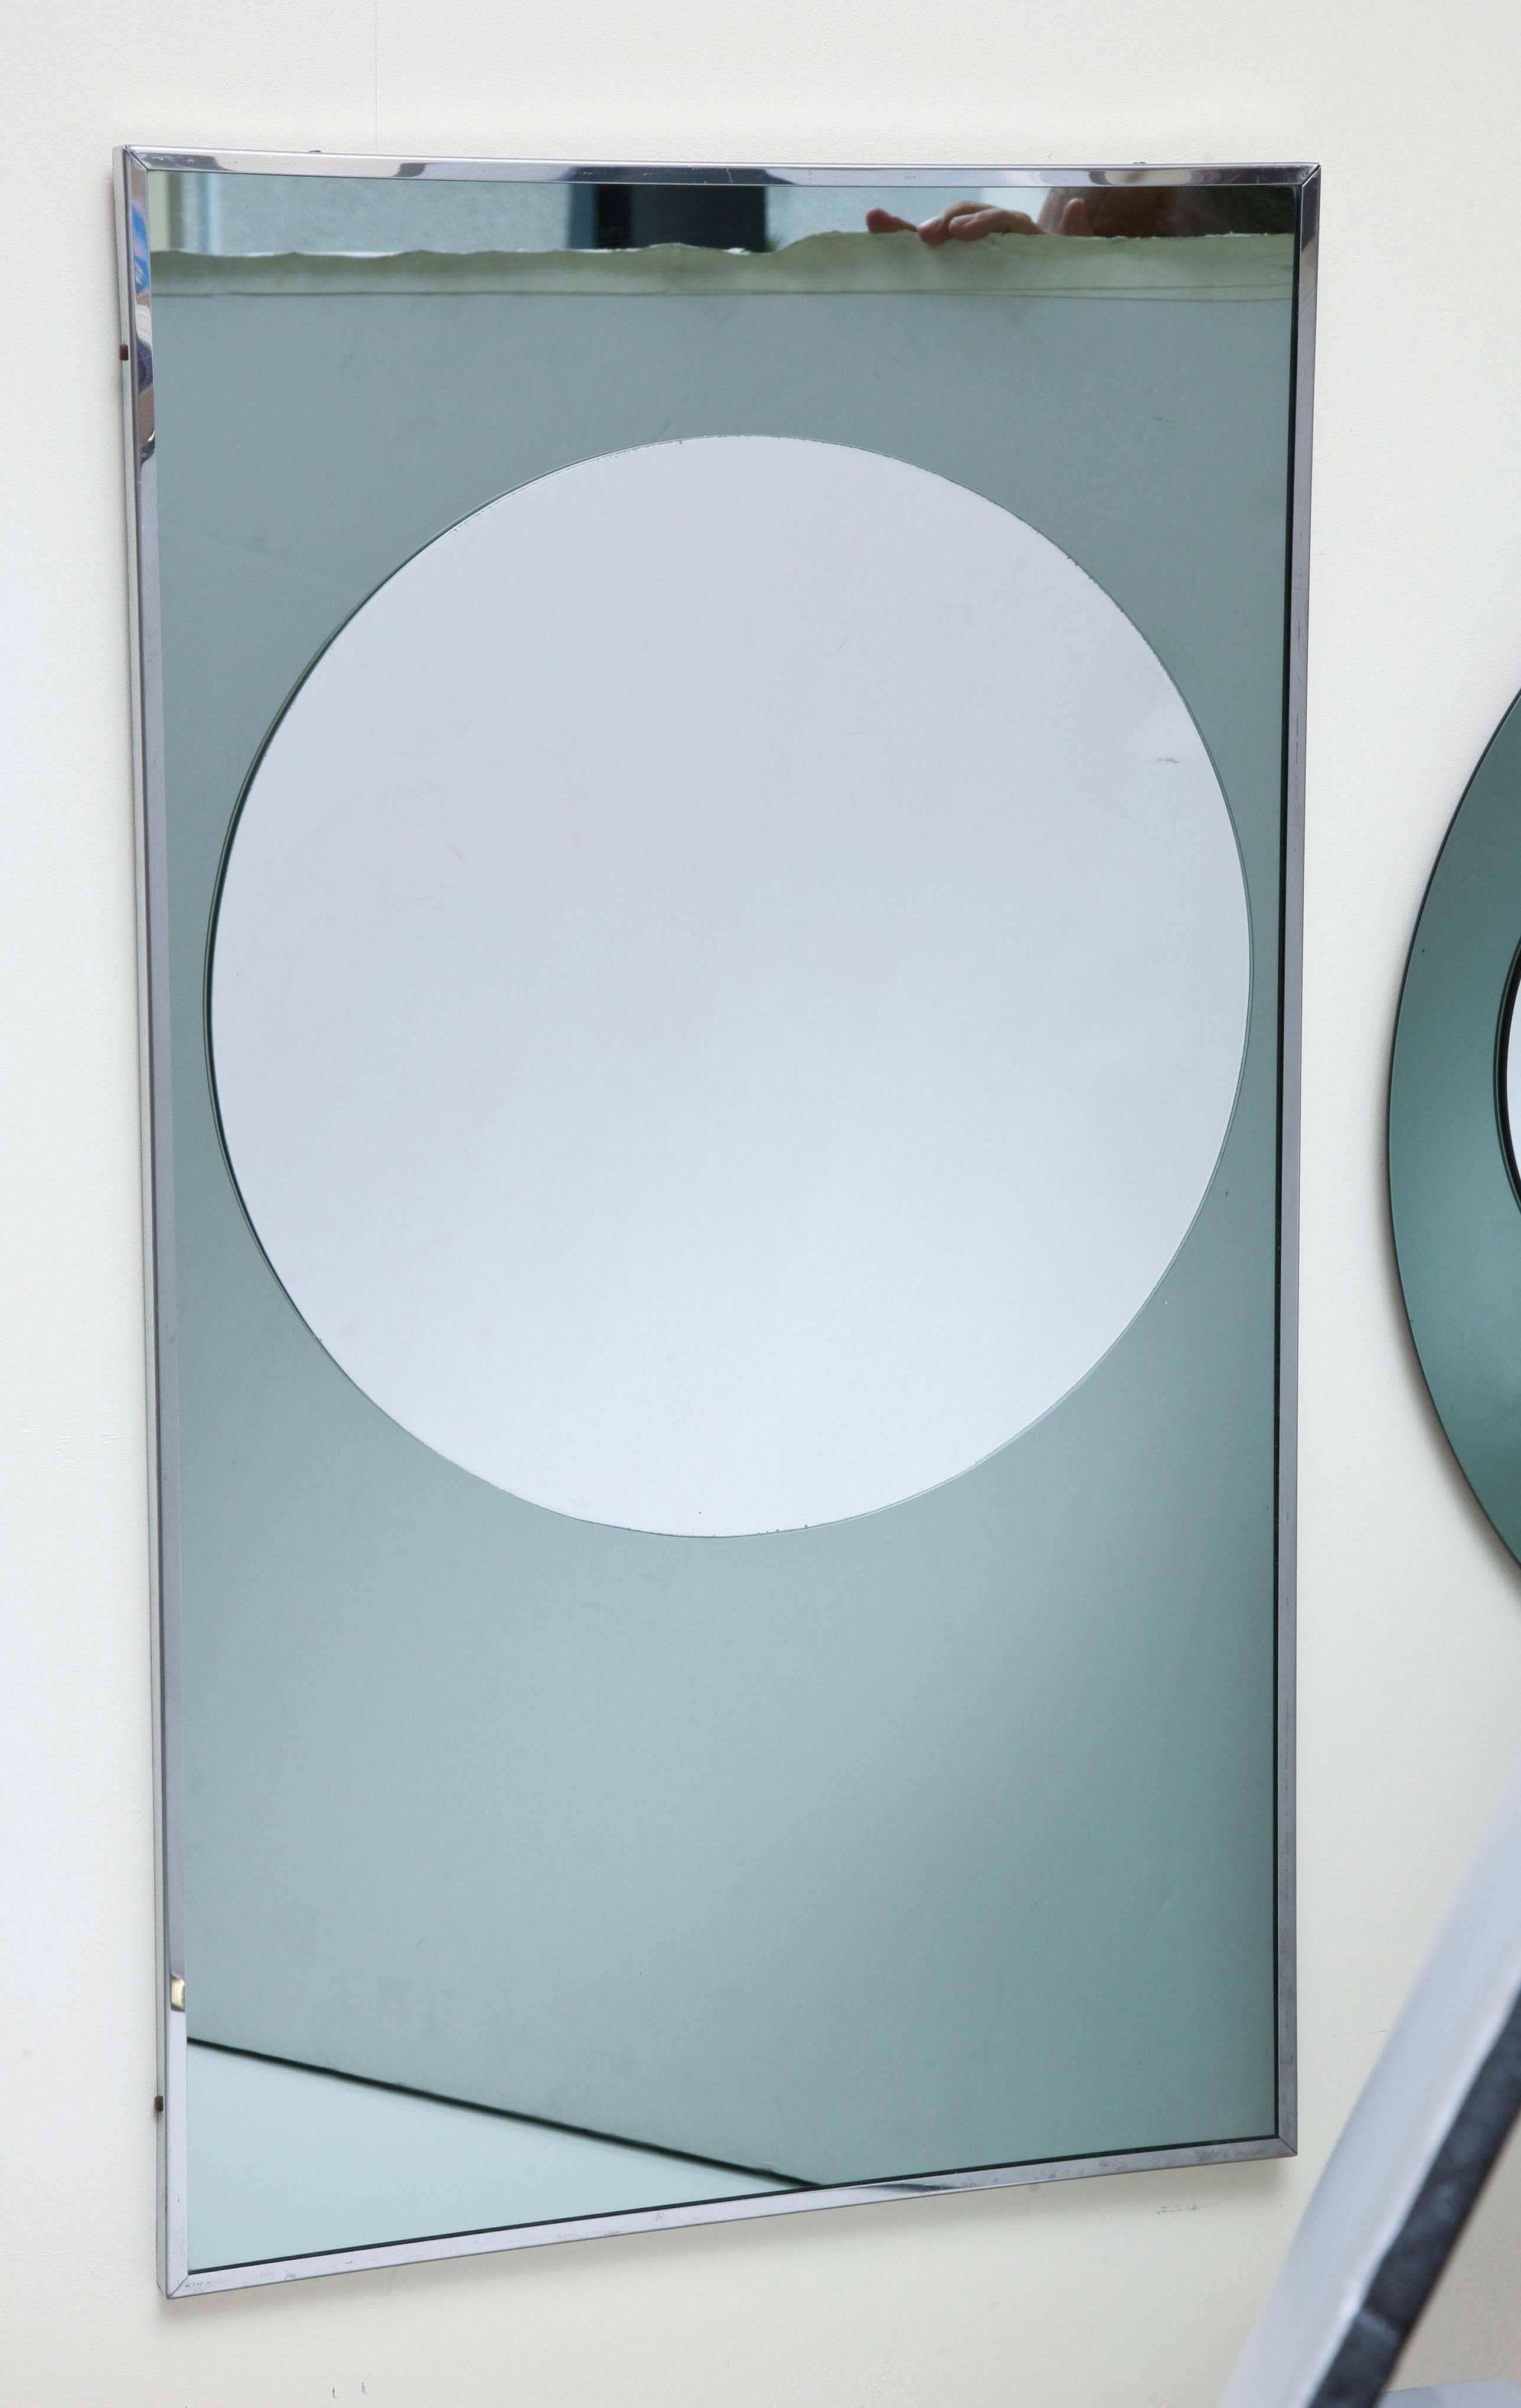 Modernes einzigartiges 3D rund und rechteckig. Ganzglas-Venezianische Wandspiegel.
Dimension runder Spiegel:
Durchmesser: 23,5 Zoll, Tiefe: 1 Zoll.